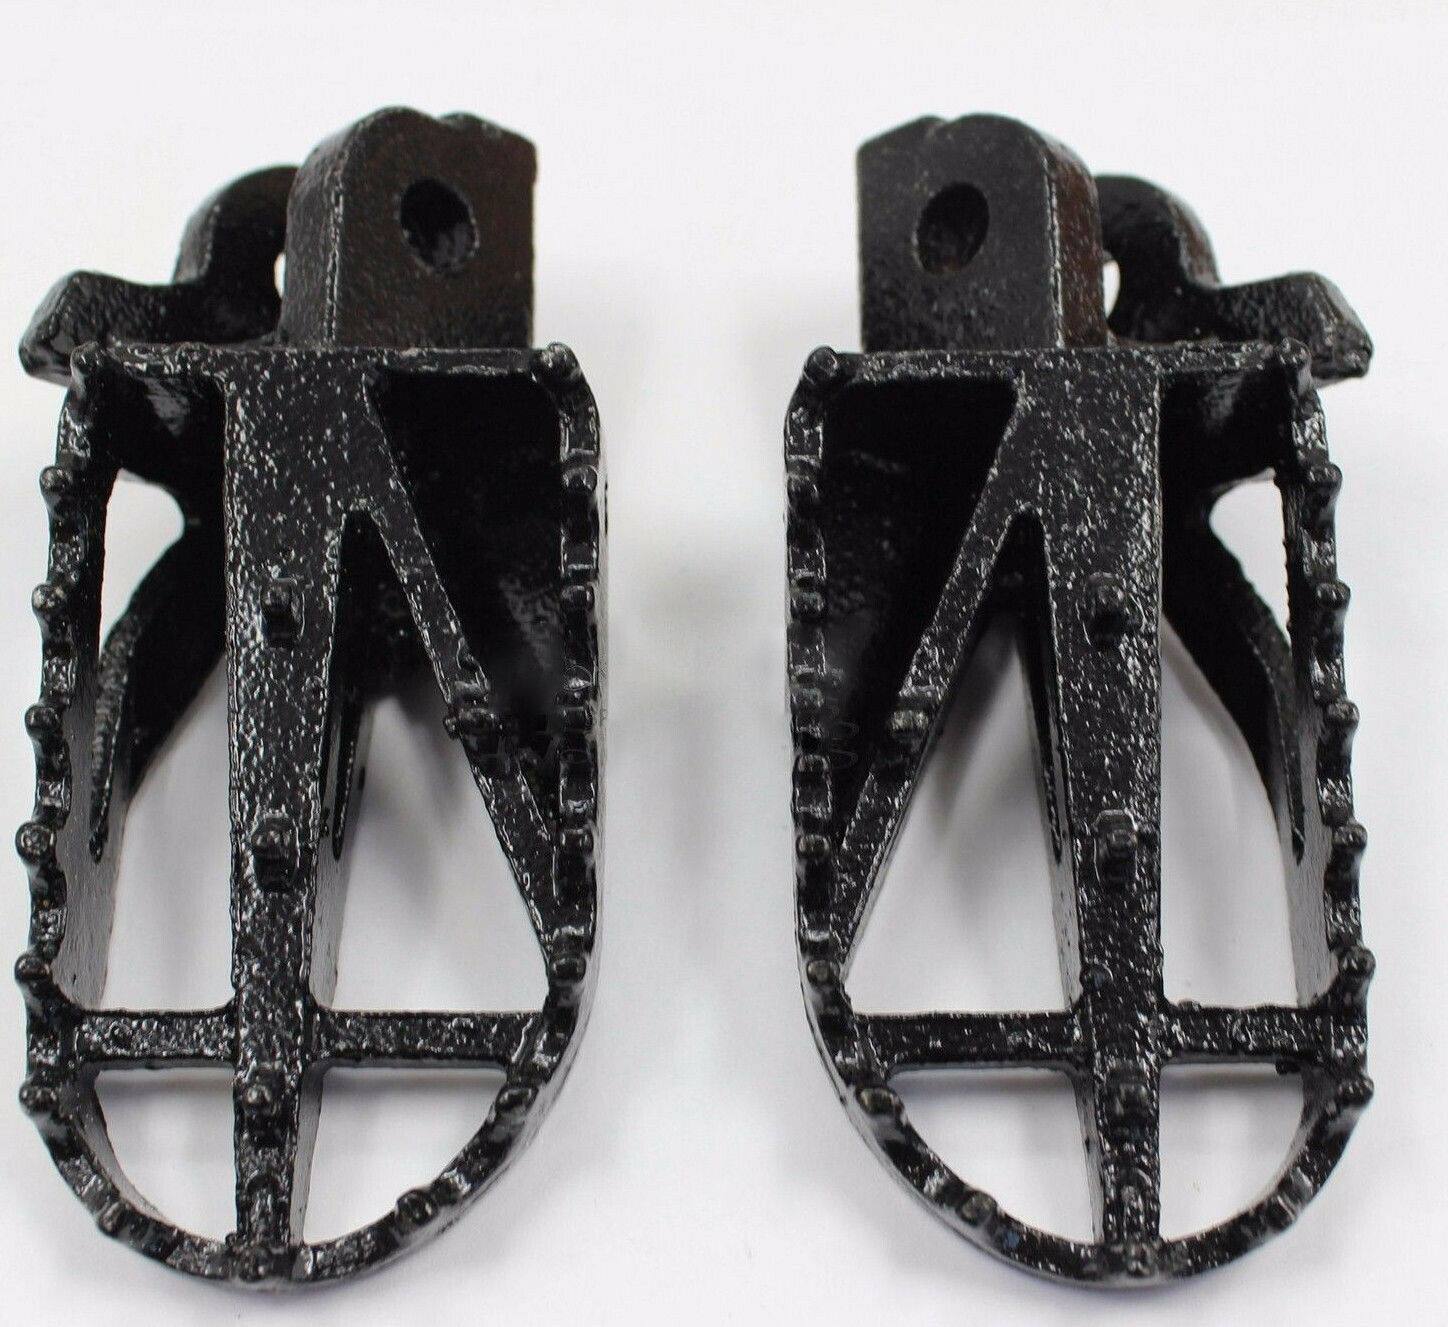 Steel Universal Folding Foot Pegs Footpegs for Dirt Pit Bike Motorcycle Black - TDRMOTO